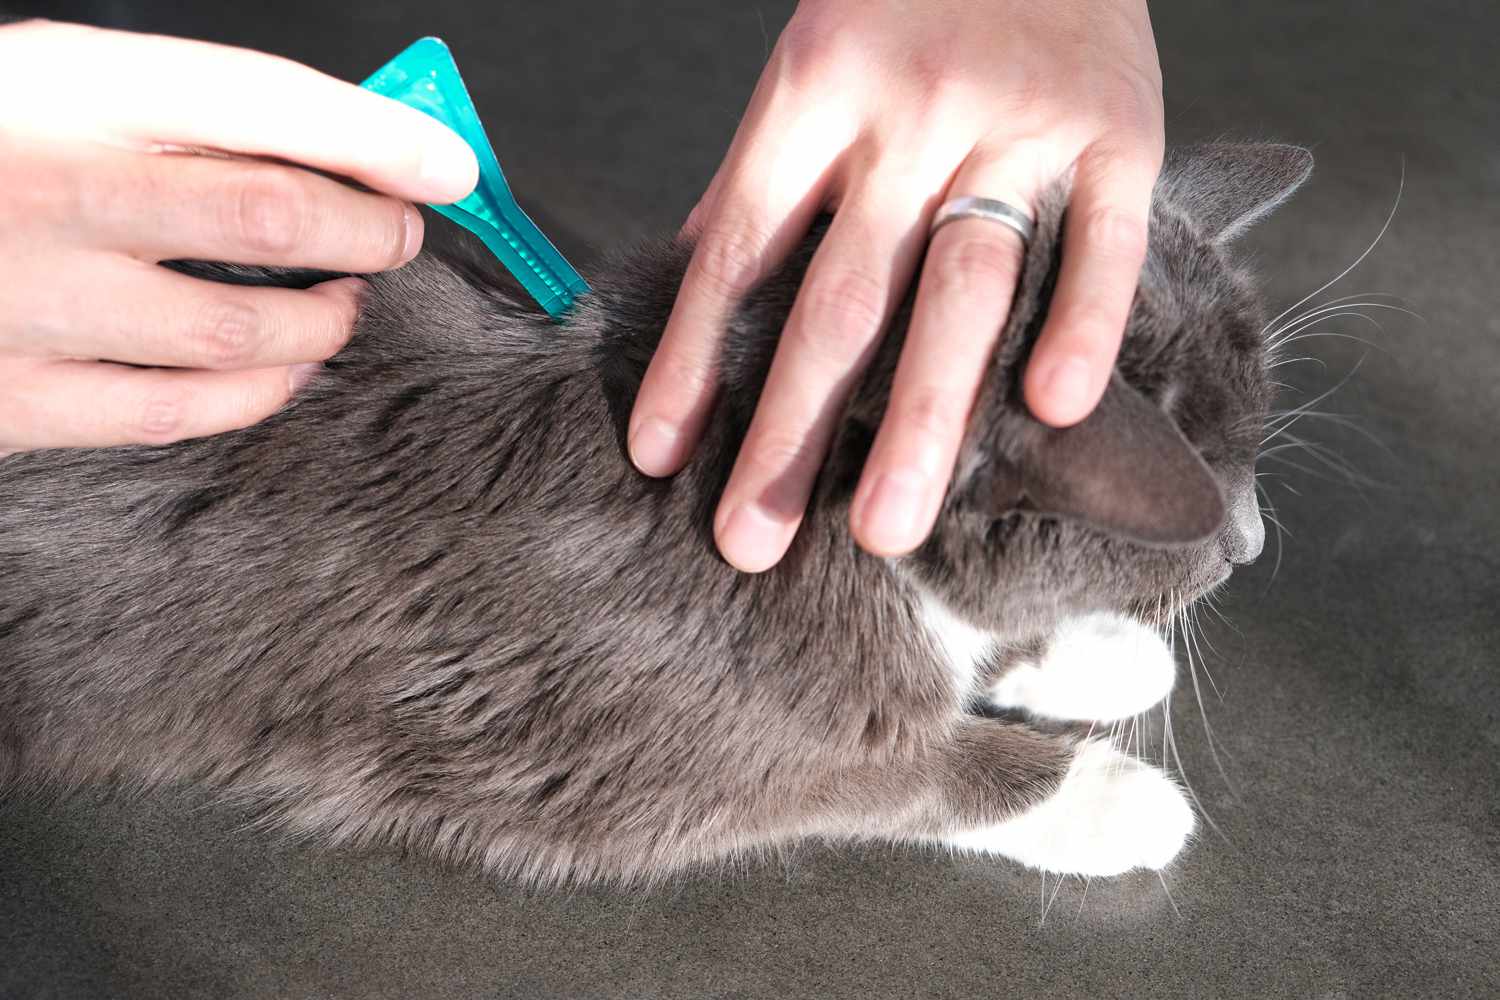 las manos exprimen la solución tópica sobre los hombros traseros del gato para aliviar la alergia